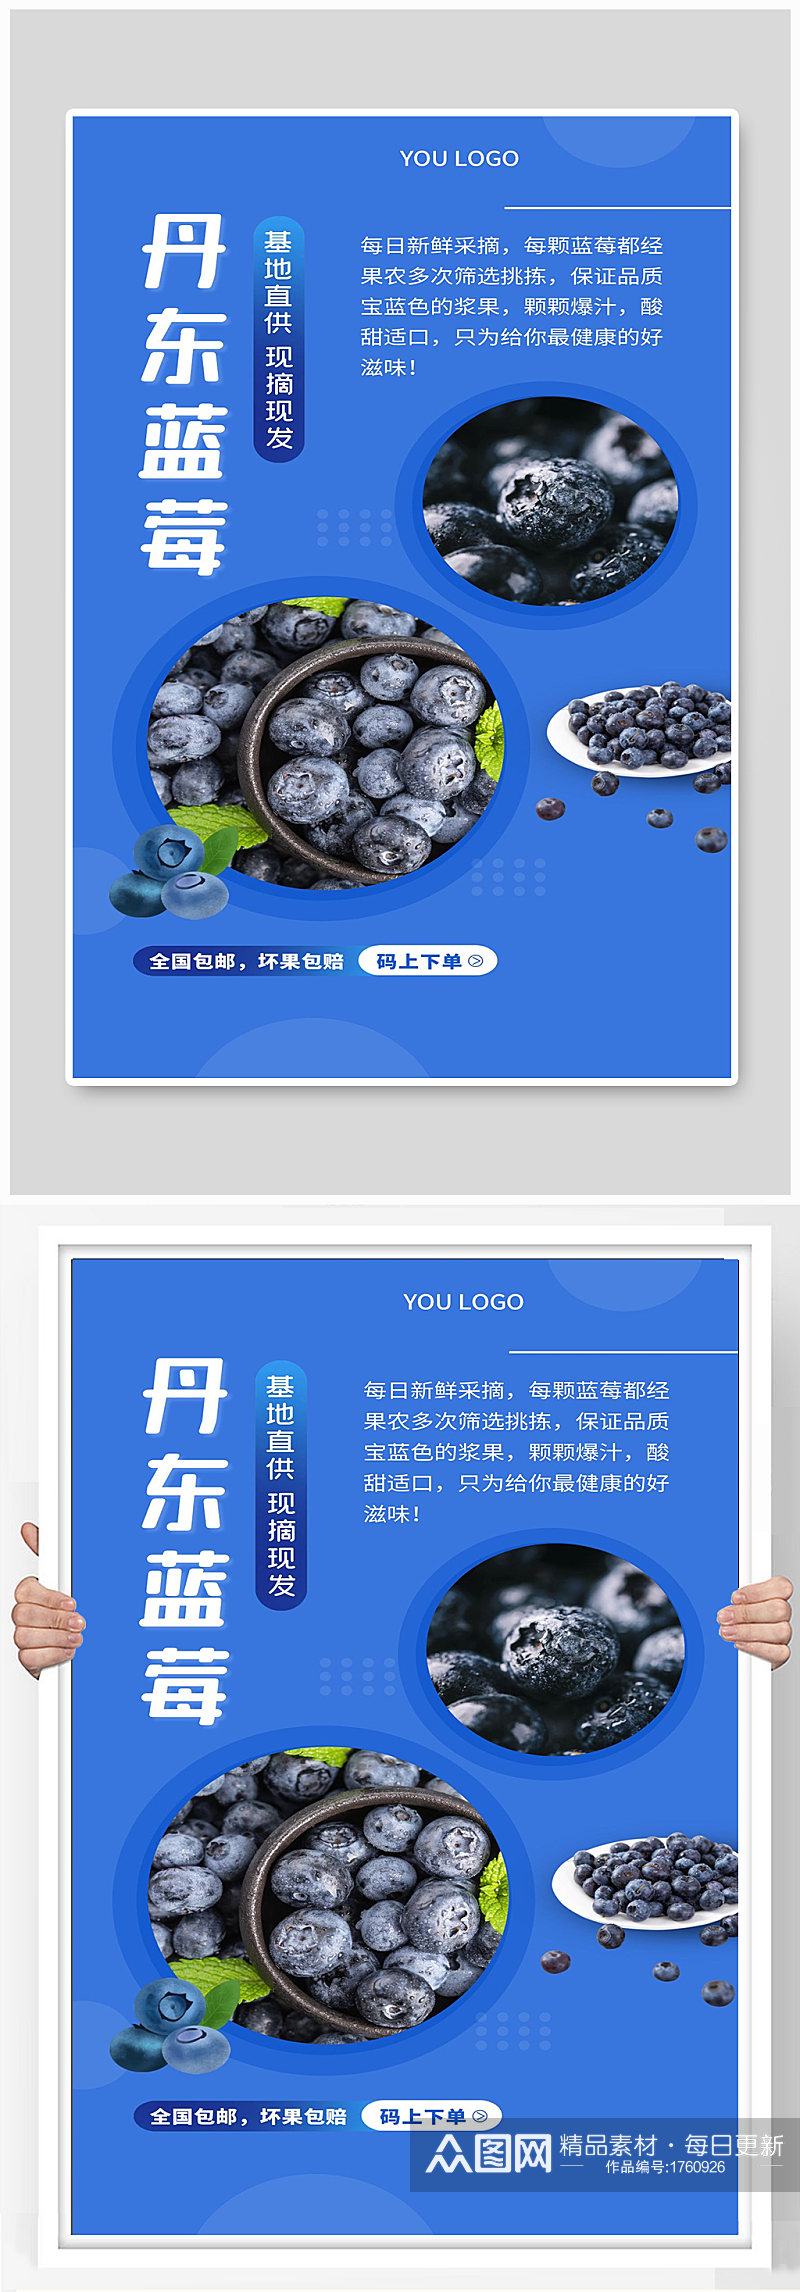 水果丹东蓝莓宣传海报制作素材